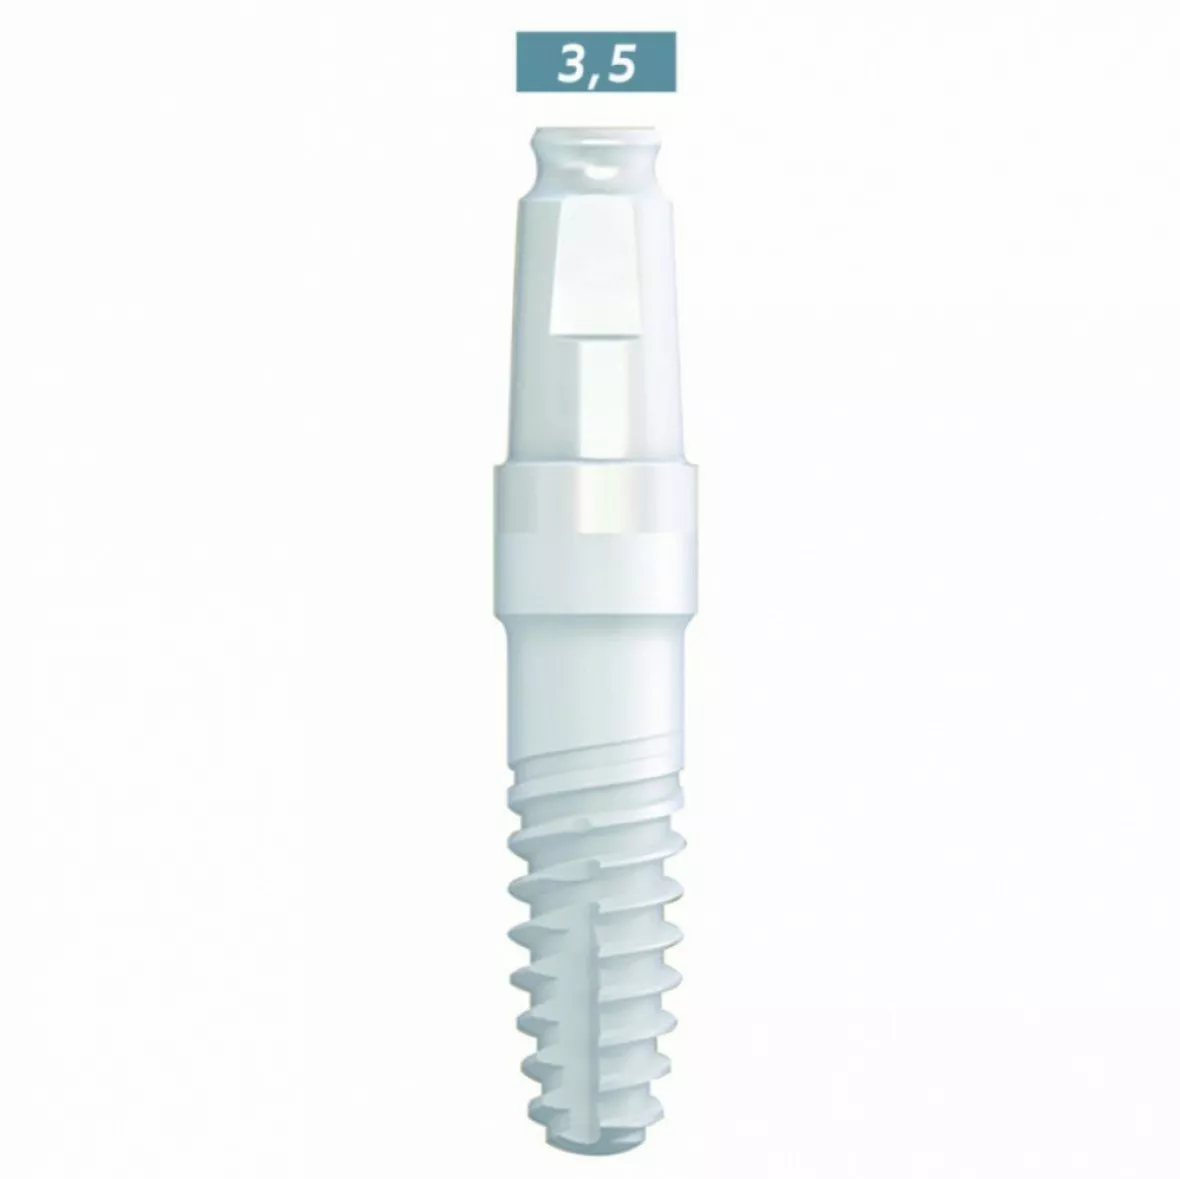 whiteSKY zirconium - цирконевый имплантат стоматологический (однокомпонентный), SKY3516C,  3.5 мм, L 16 мм